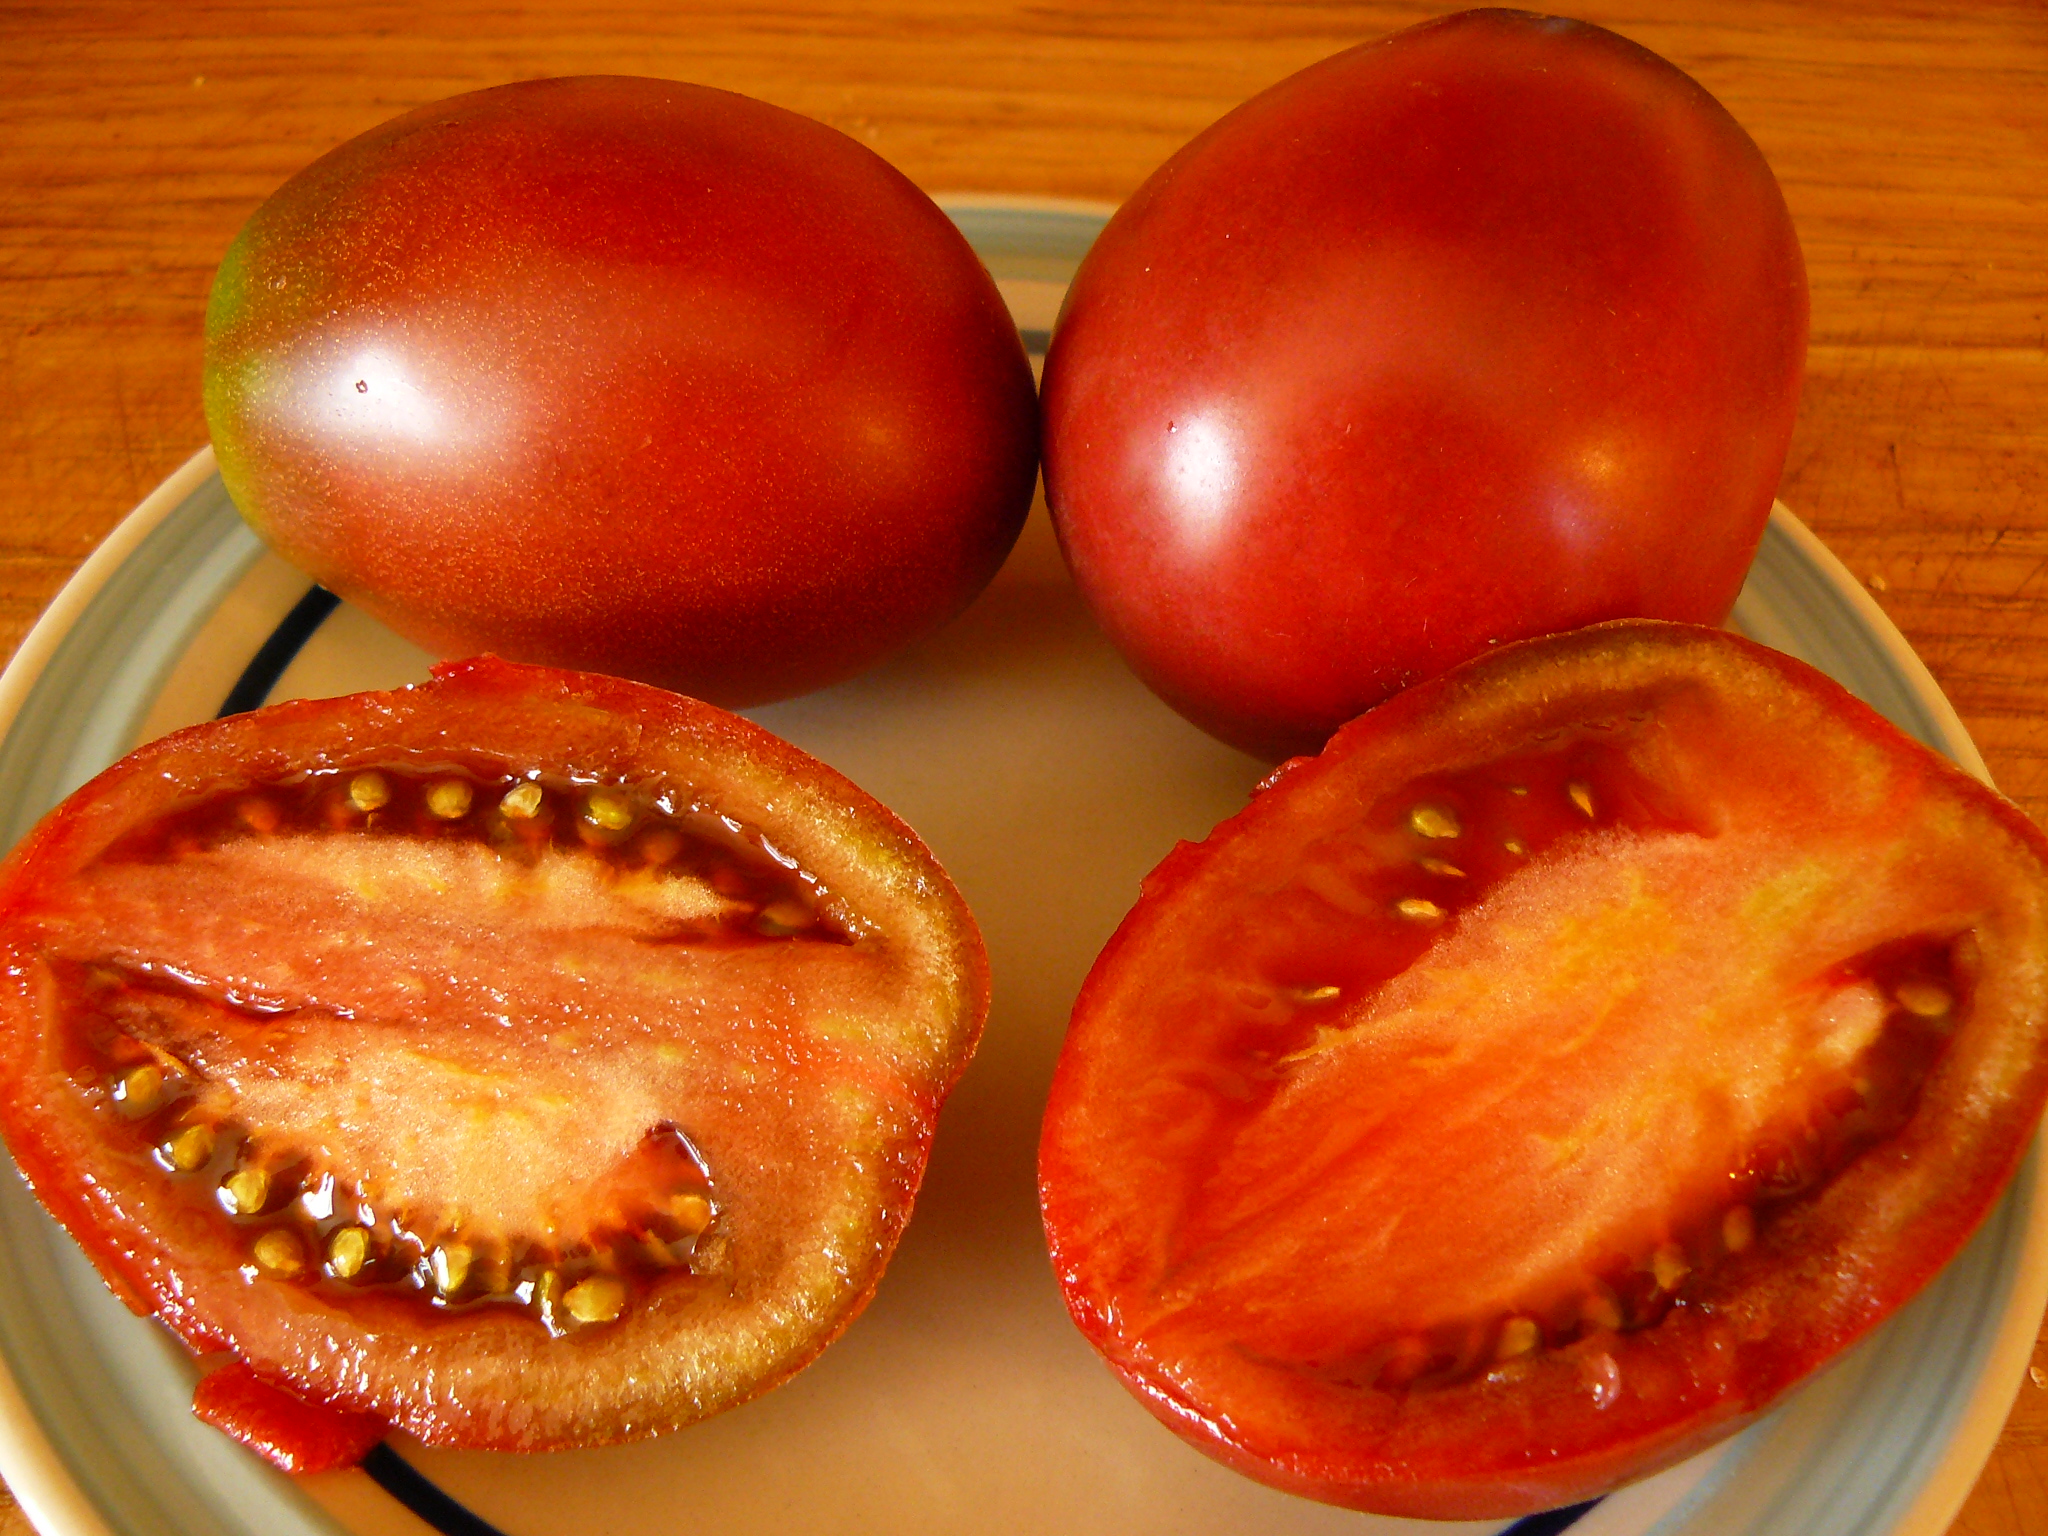 Ukrainian Purple Plum Indeterminate Tomato Seeds